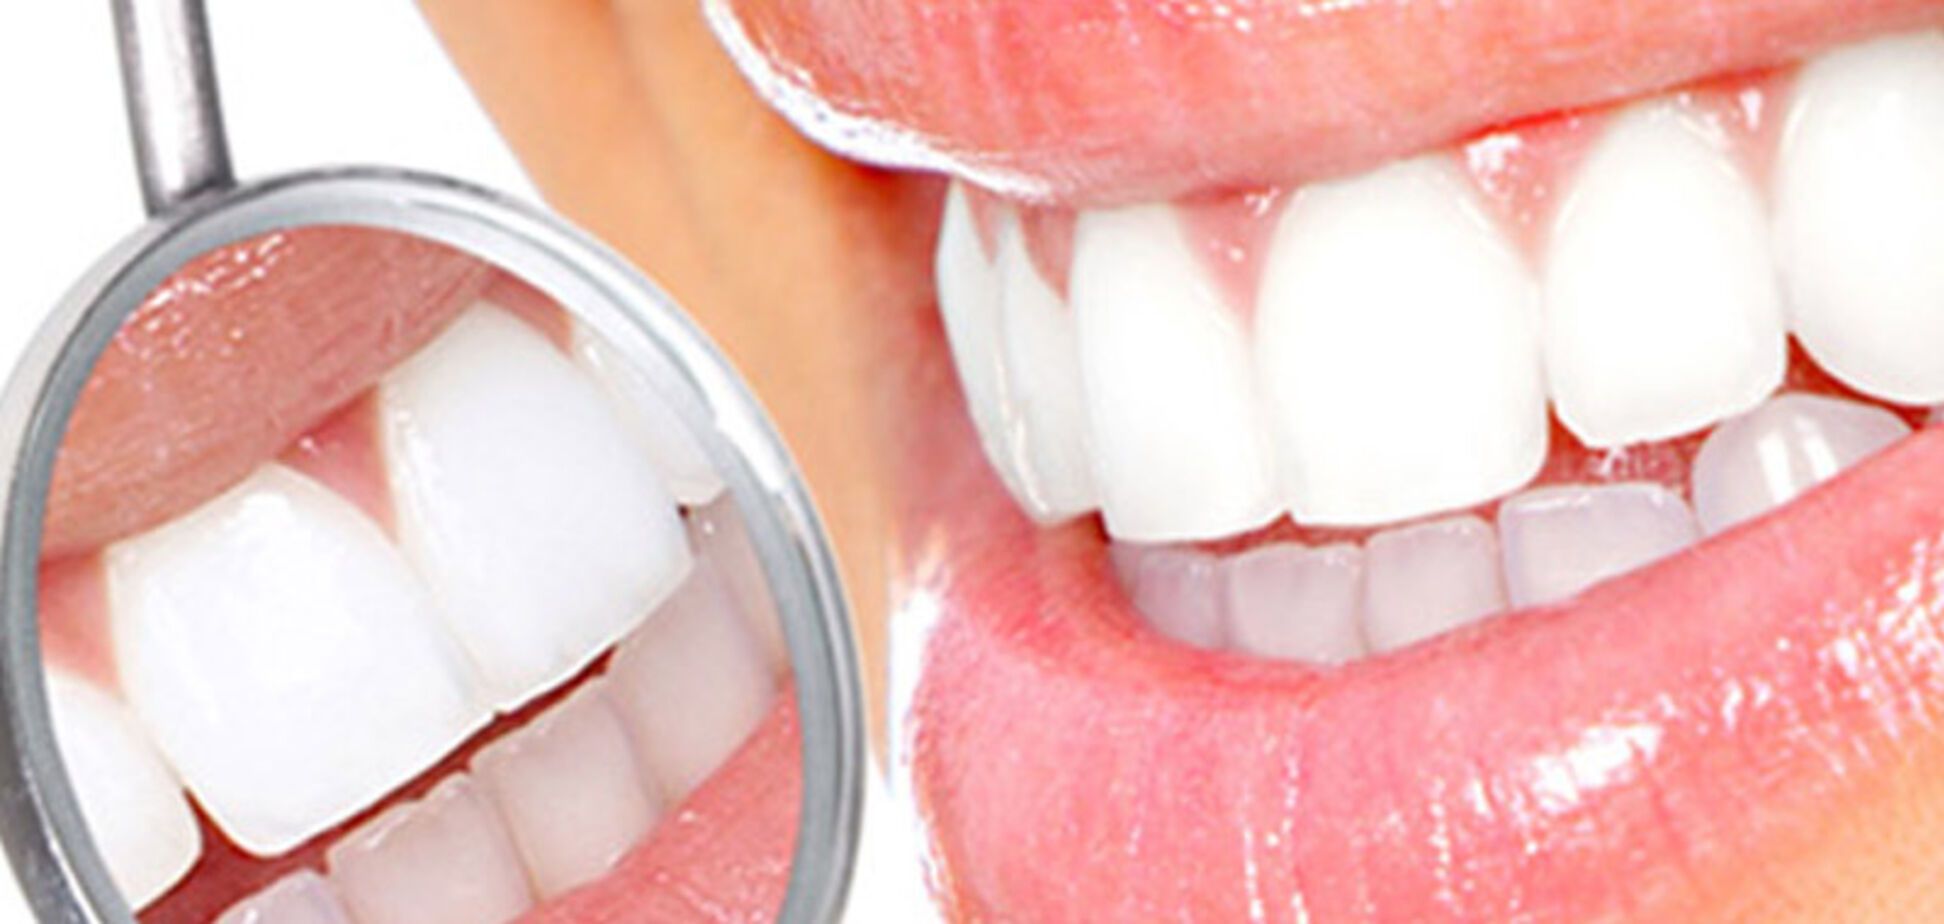 Топ-5 продуктов, которые сильно повреждают зубы